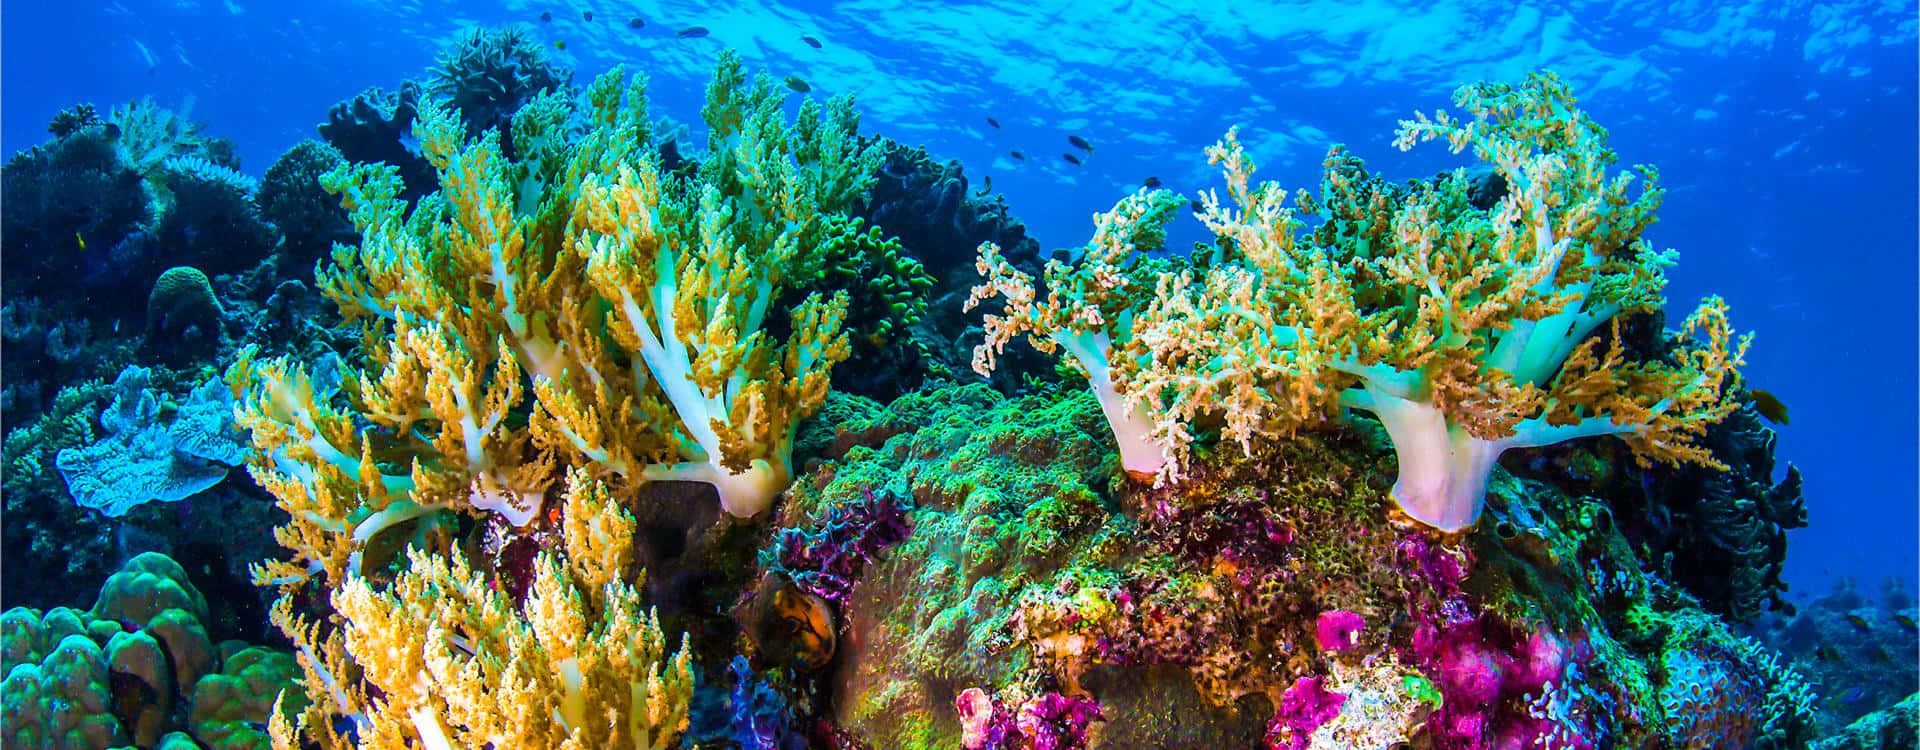 Imagende Arrecife De Coral Y Criaturas Submarinas En Australia